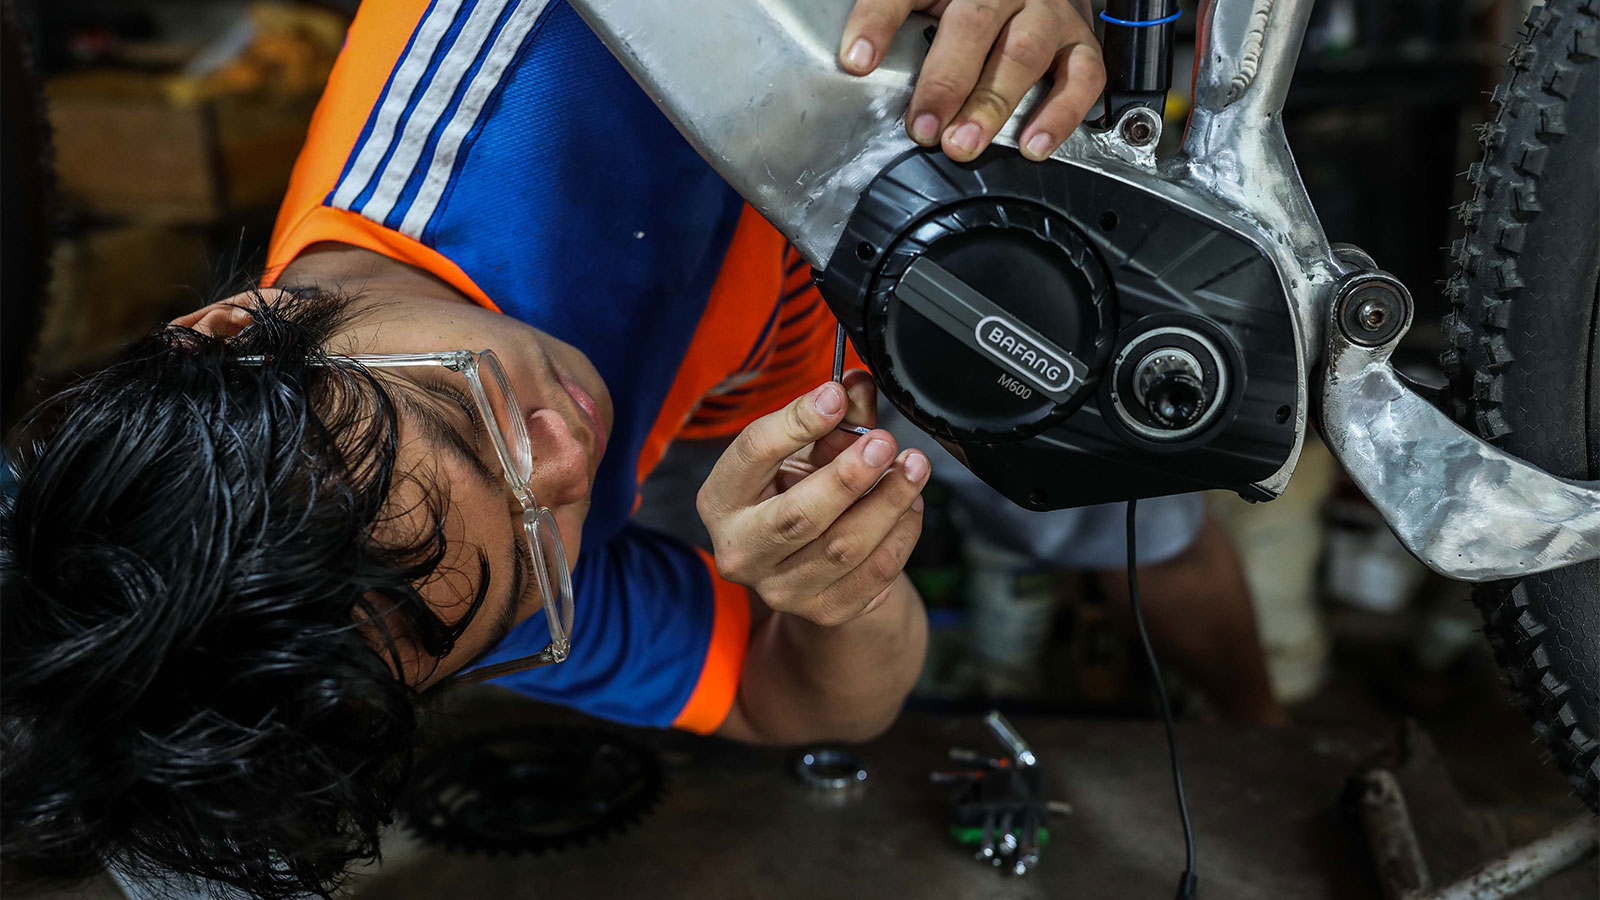 Gözlük takan bir adam, bir aletle e-bisikletin şasisi üzerinde çalışmak için eğiliyor